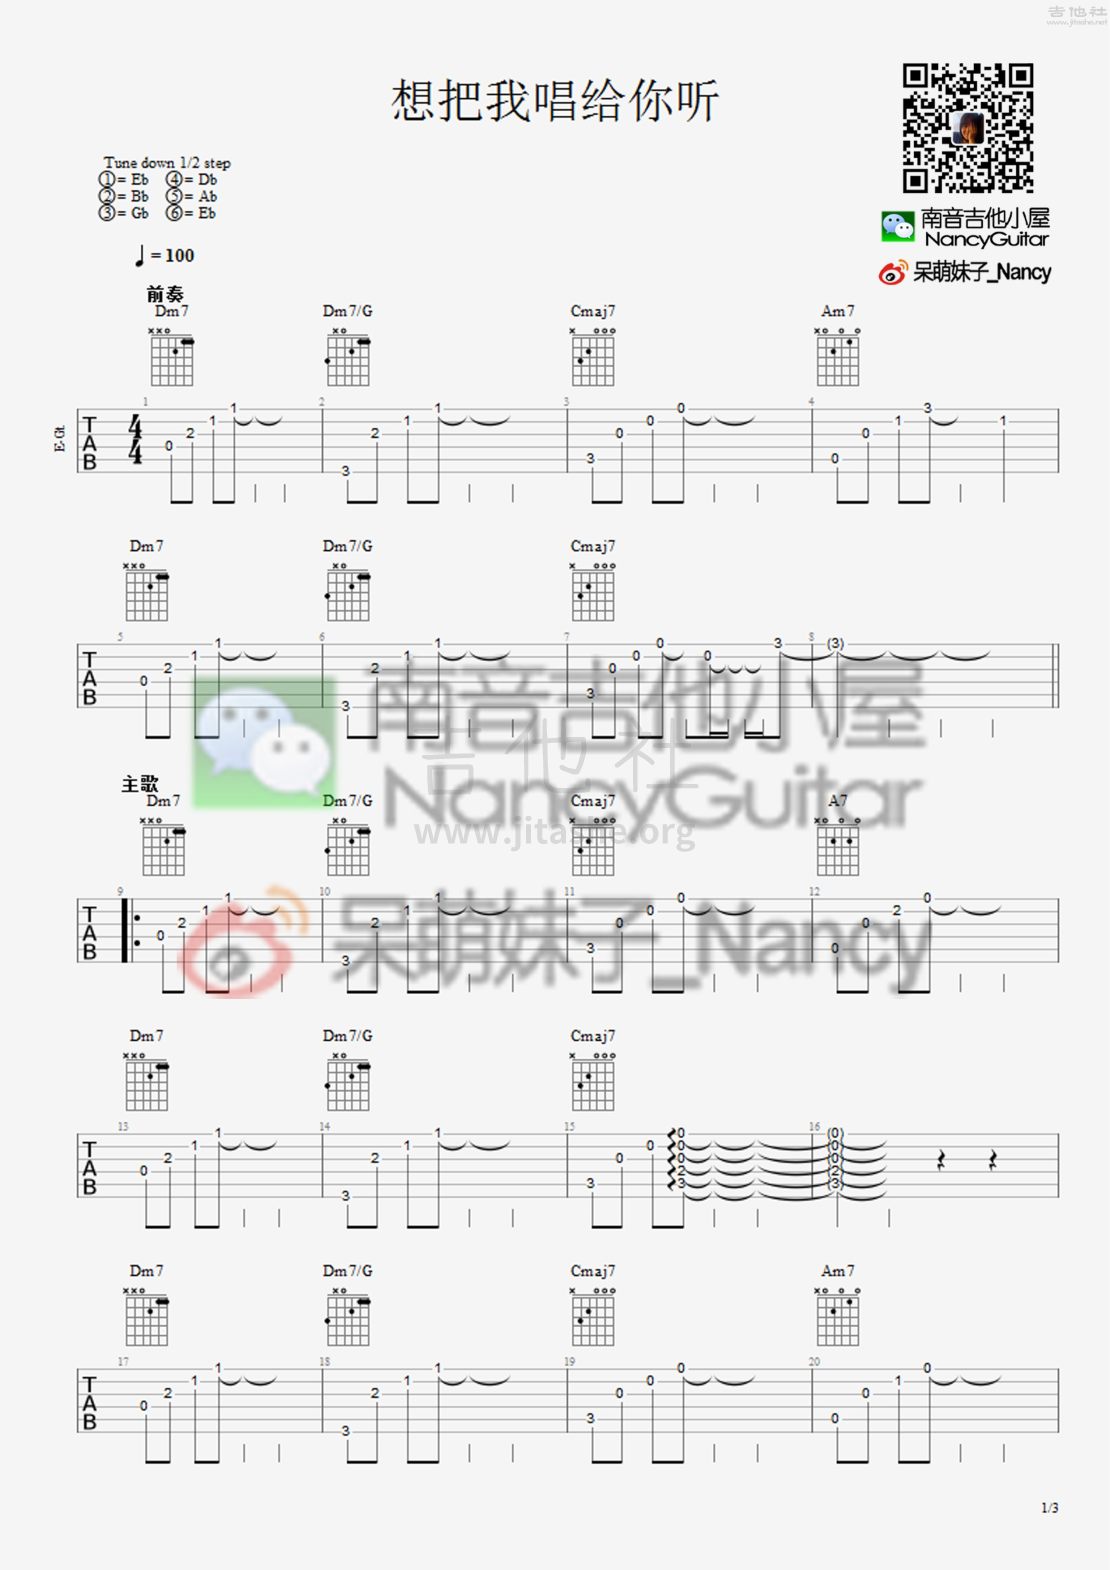 想把我唱给你听（Nancy_南音吉他小屋）吉他谱(图片谱,弹唱,教学)_老狼(王阳)_想把我唱给你听 1.jpg